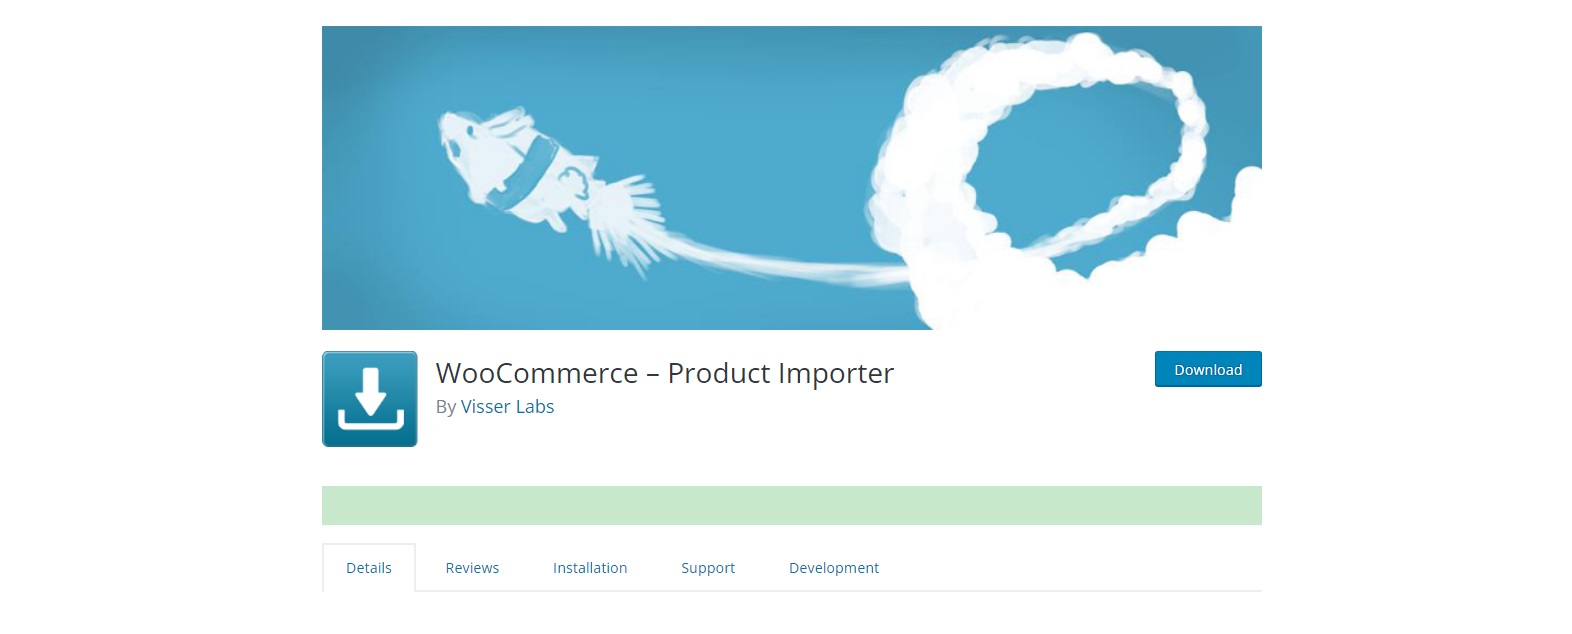 WooCommerce – Product Importer